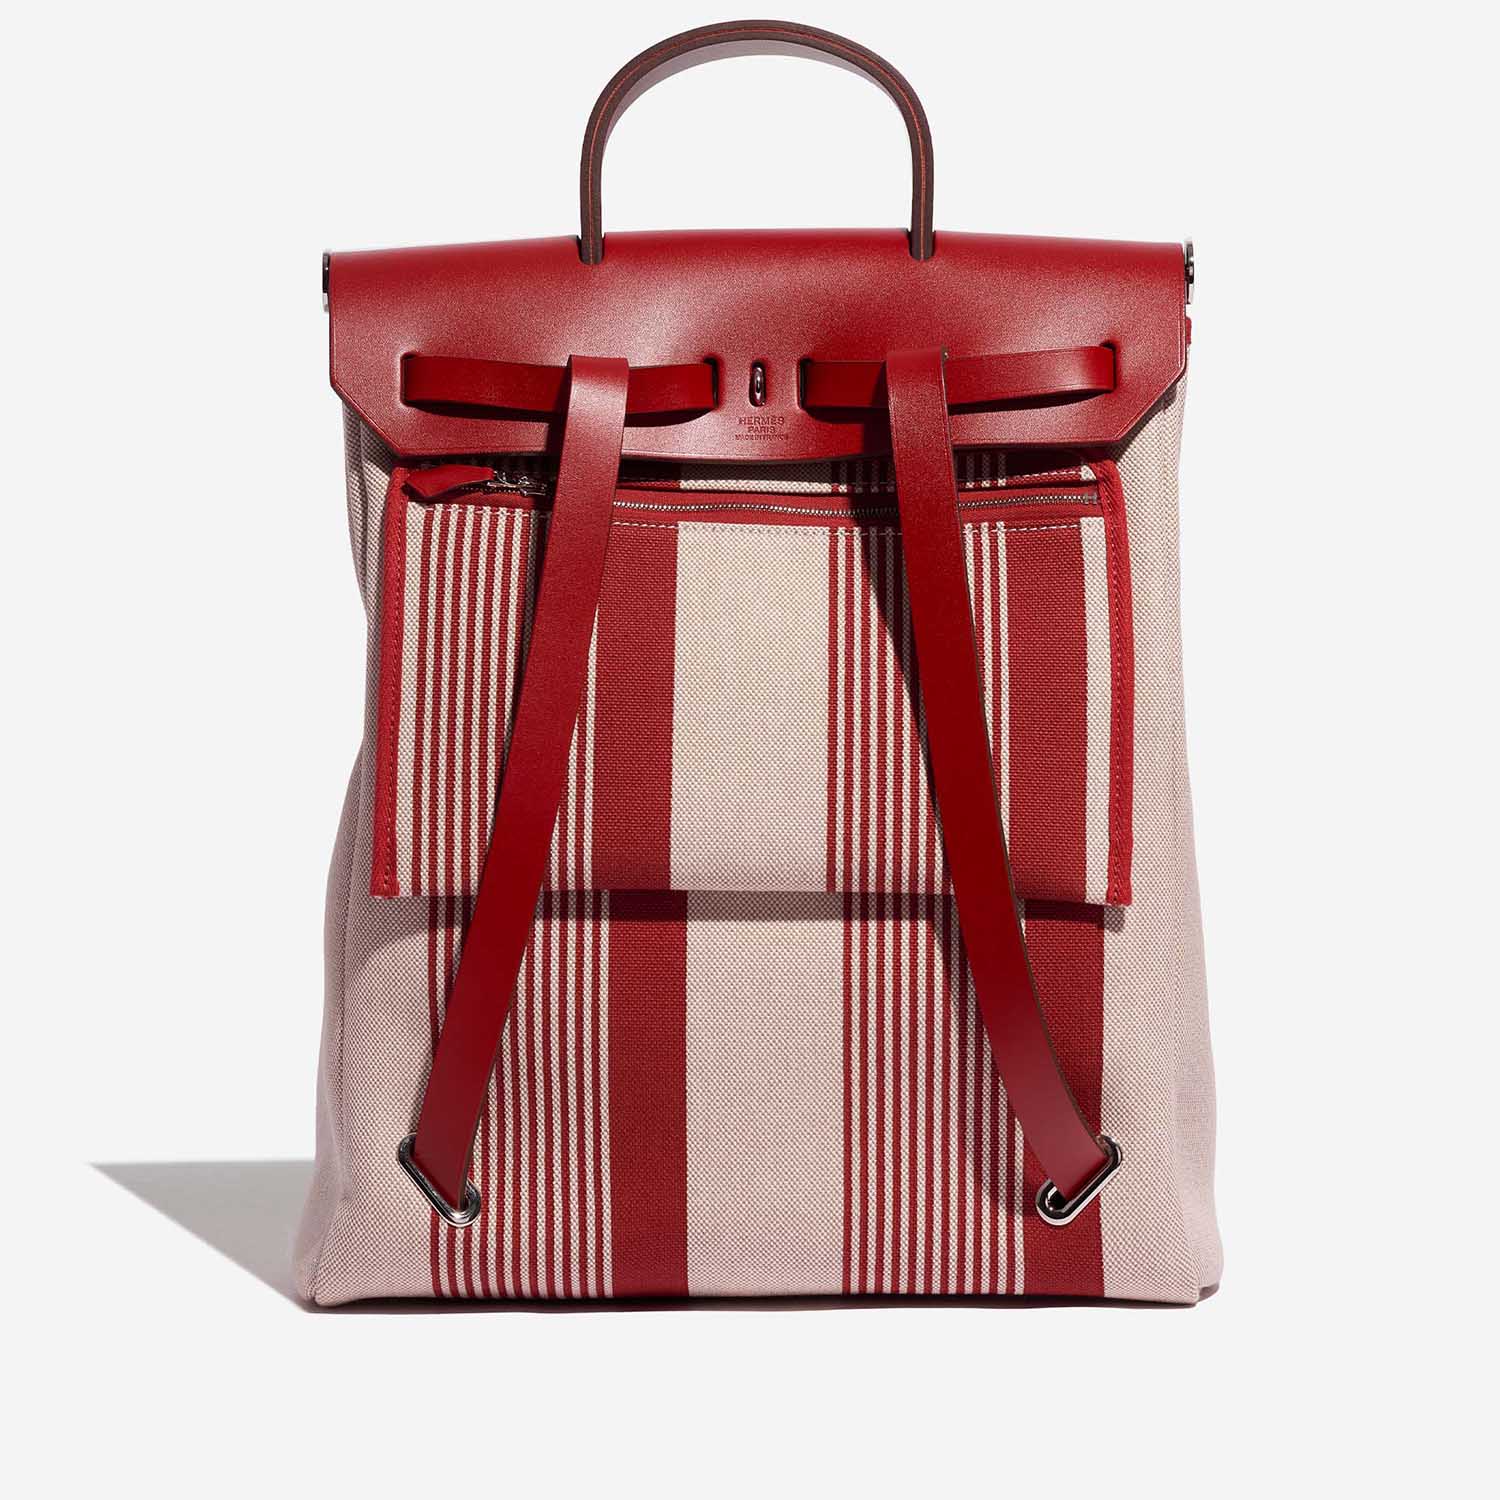 Pre-owned Hermès bag Herbag Backpack Toile / Vache Hunter Bordeaux / Ecru / Beige / Piment Red Back | Sell your designer bag on Saclab.com